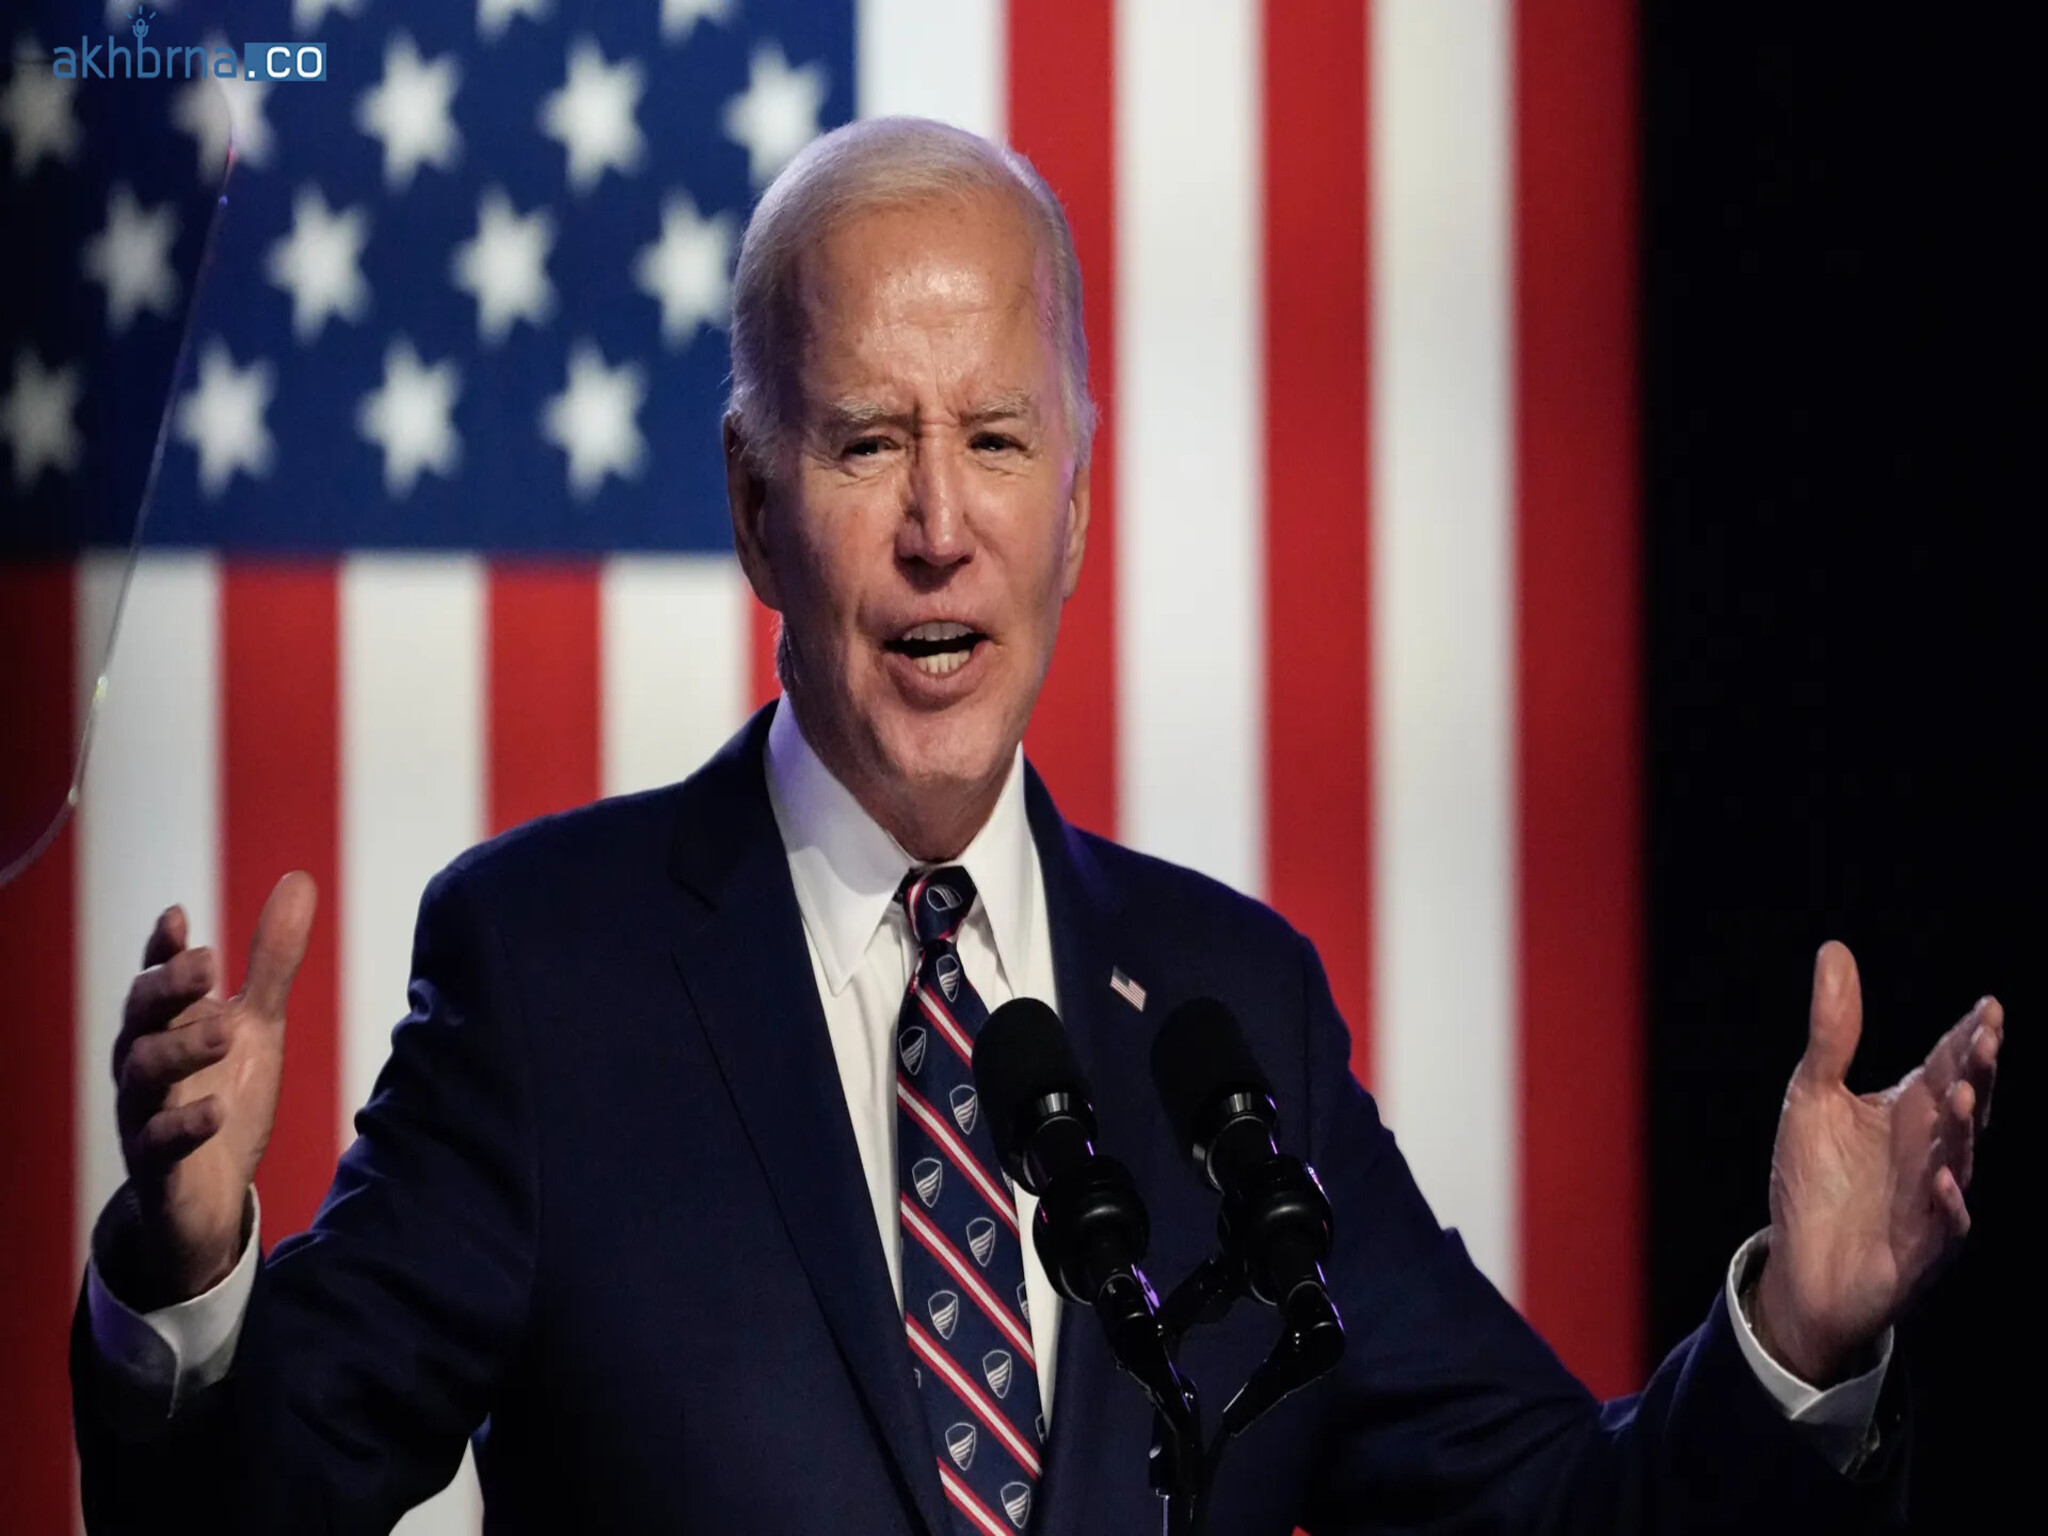 President Joe Biden wins the presidential primary in North Dakota